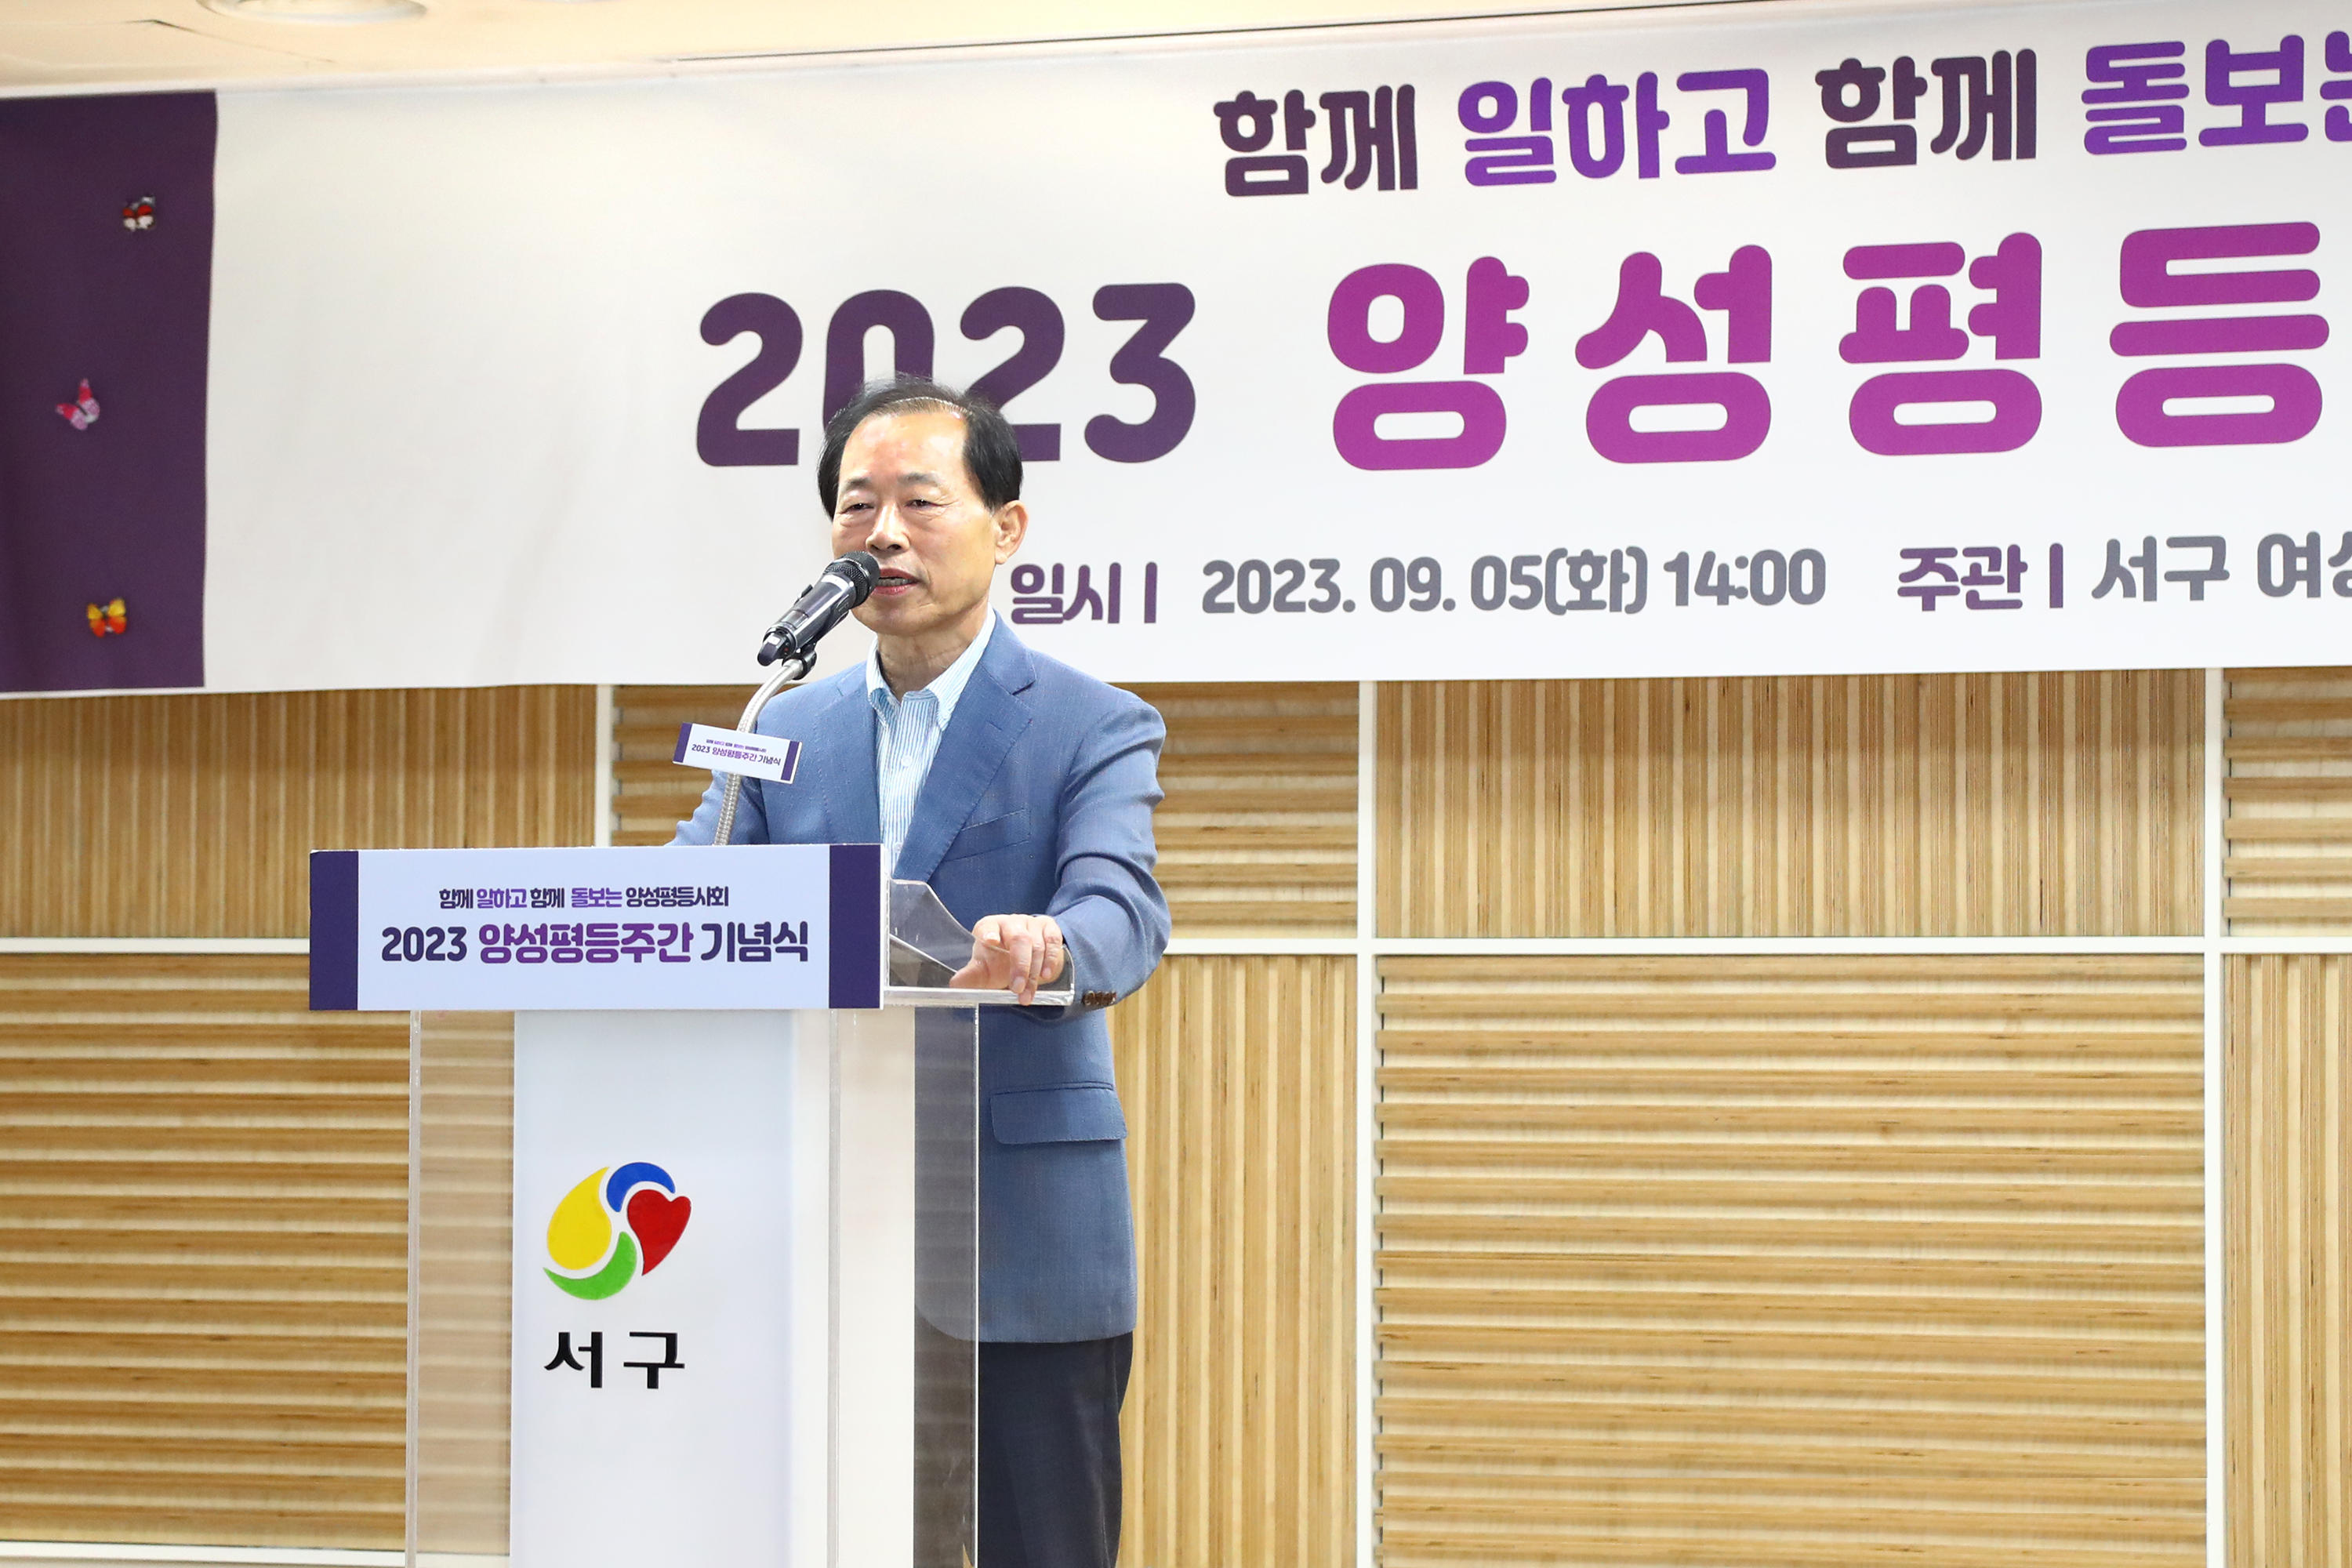 2023 서구 양성평등주간 기념행사(9.5 구민홀) 5